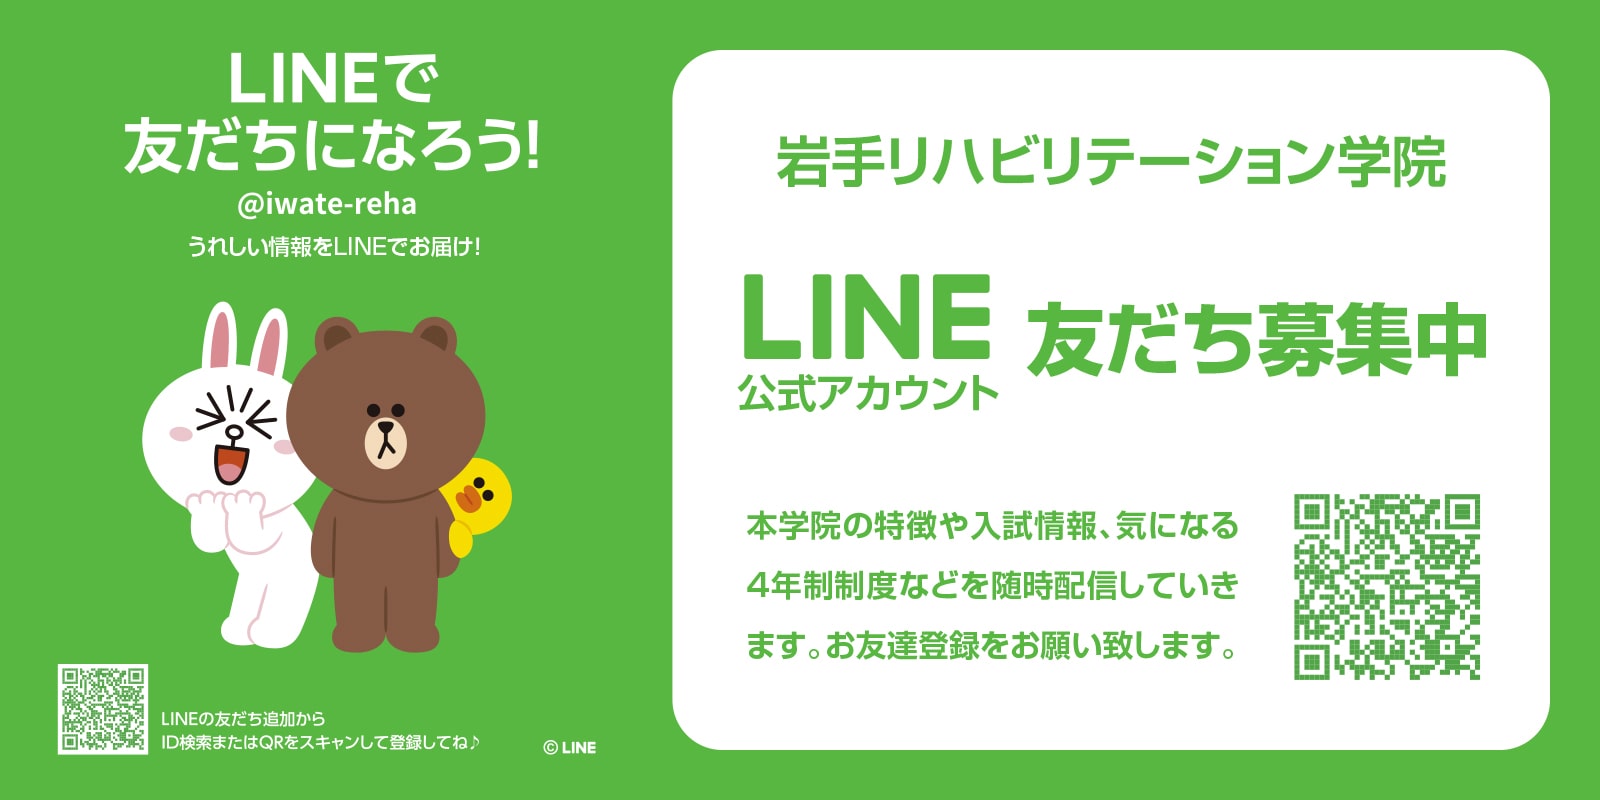 LINEで友だちになろう!! @iwate-reha うれしい情報をLINEでお届け!!